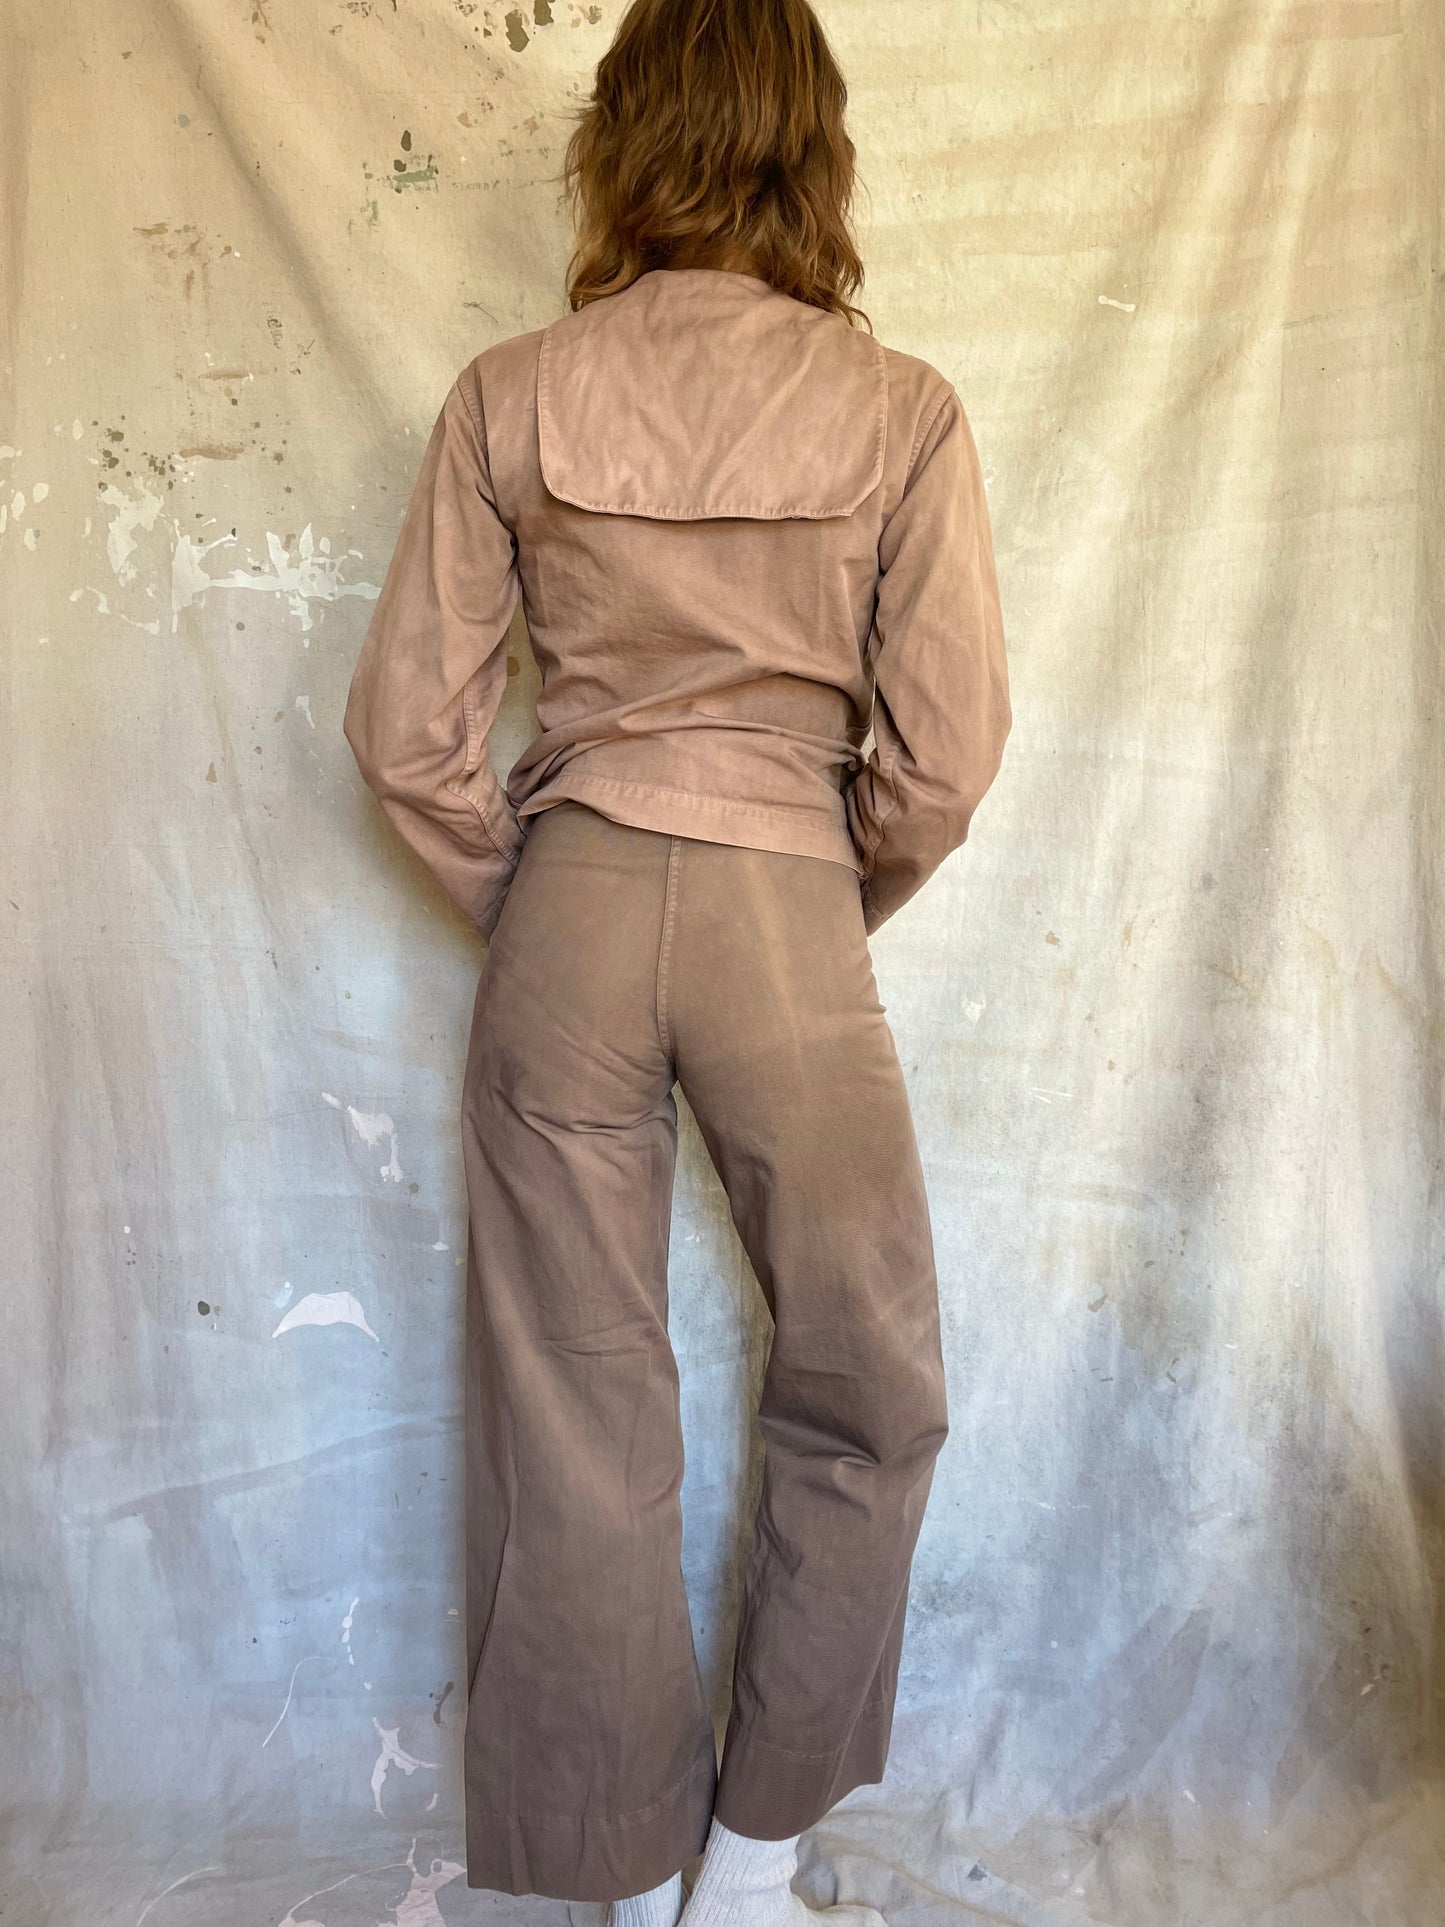 40s/50s Overdyed USN Undress Service Uniform Pants “Sailor Pants”